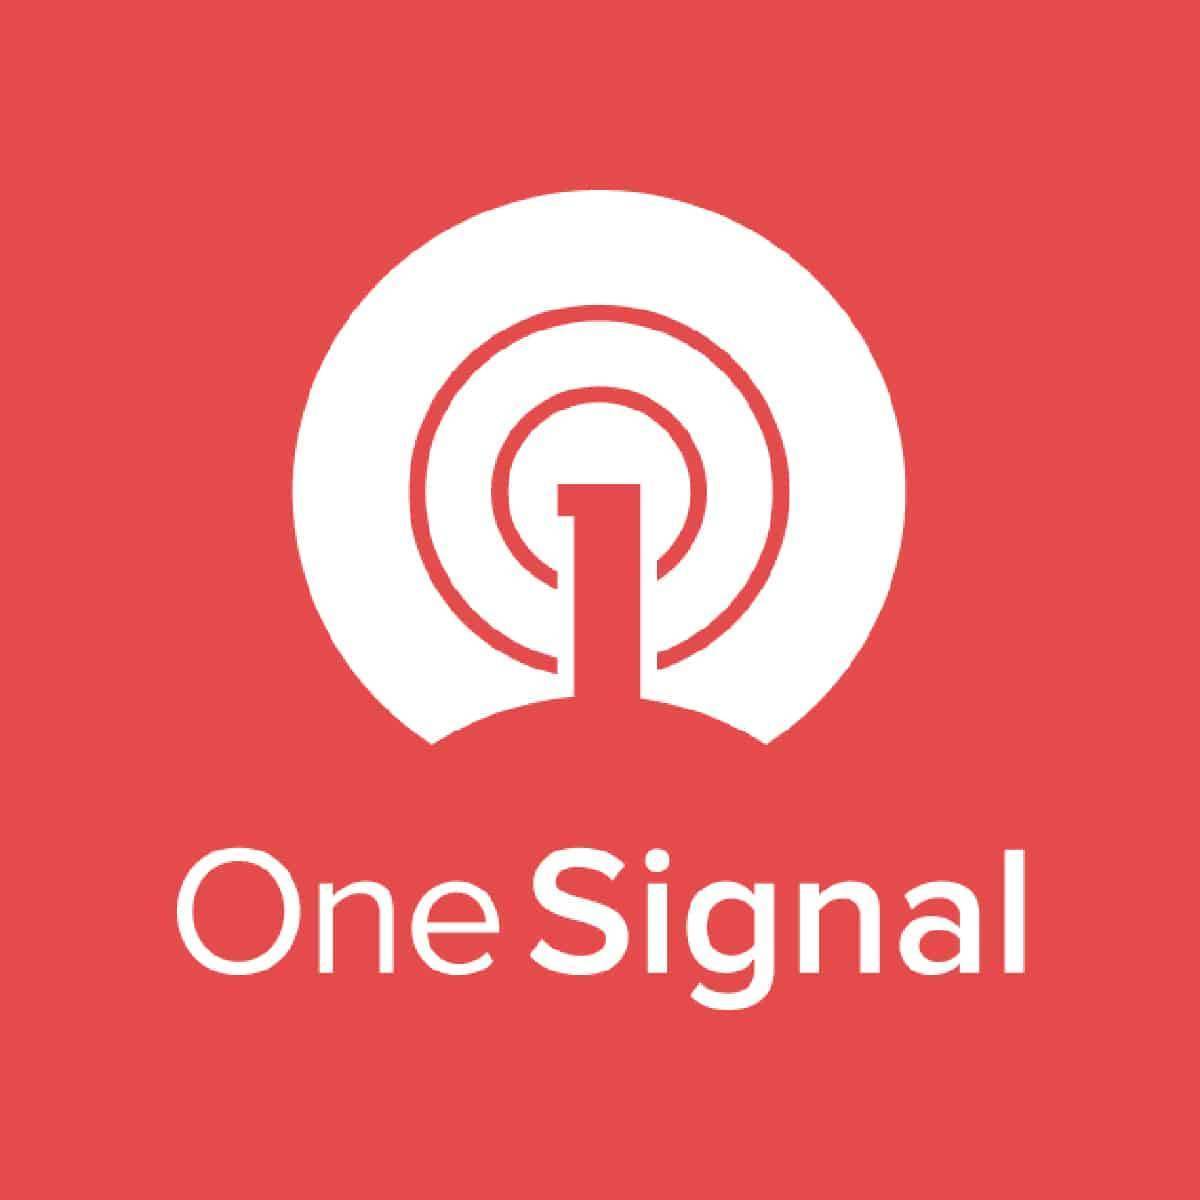 One Signal logo.